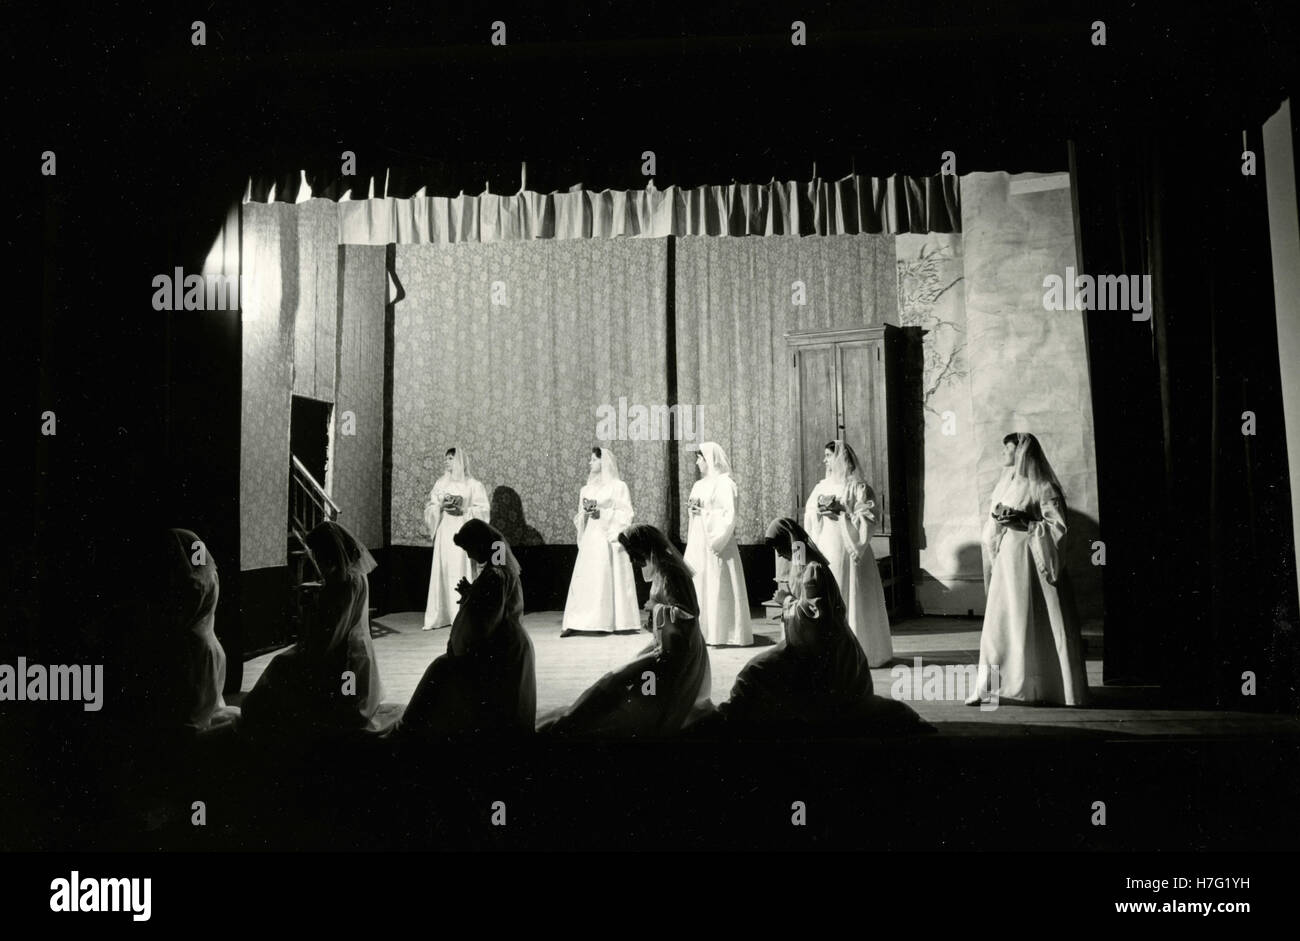 Catholic nuns school play, Italy Stock Photo